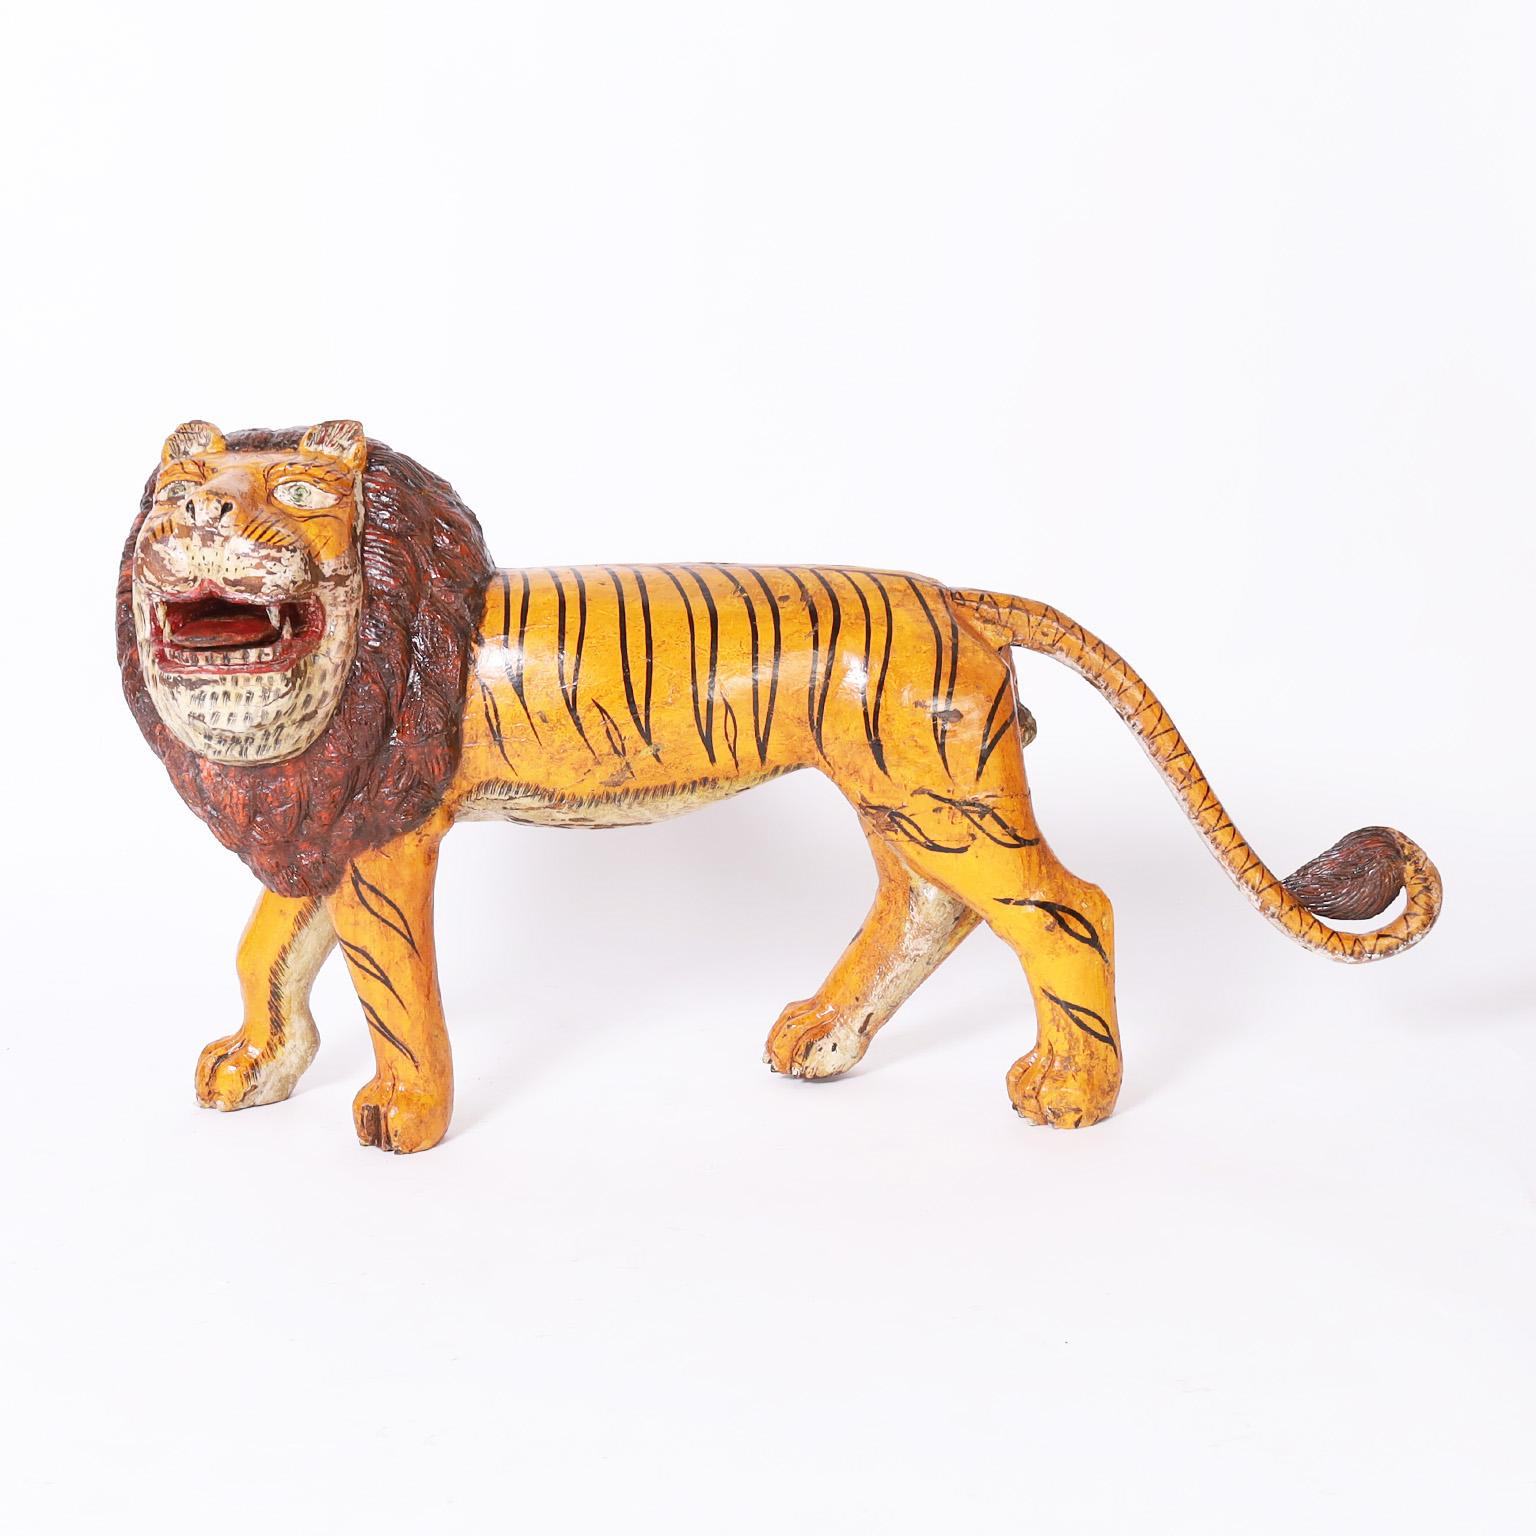 Sculpture rustique fantaisiste en acajou sculpté d'un gros chat avec une combinaison surprenante mais charmante de la forme d'un lion et des rayures d'un tigre. Il a conservé sa peinture d'origine, désormais usée à la perfection.